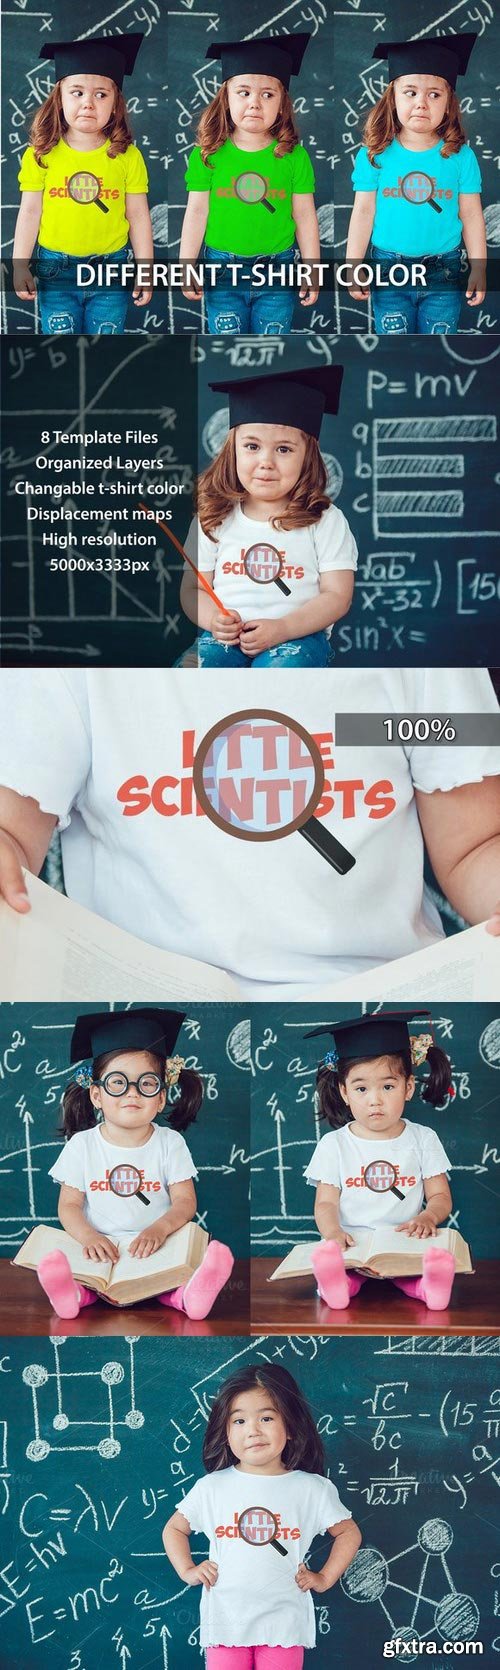 CM - Little Scientists T-Shirt Mock-Up 792744